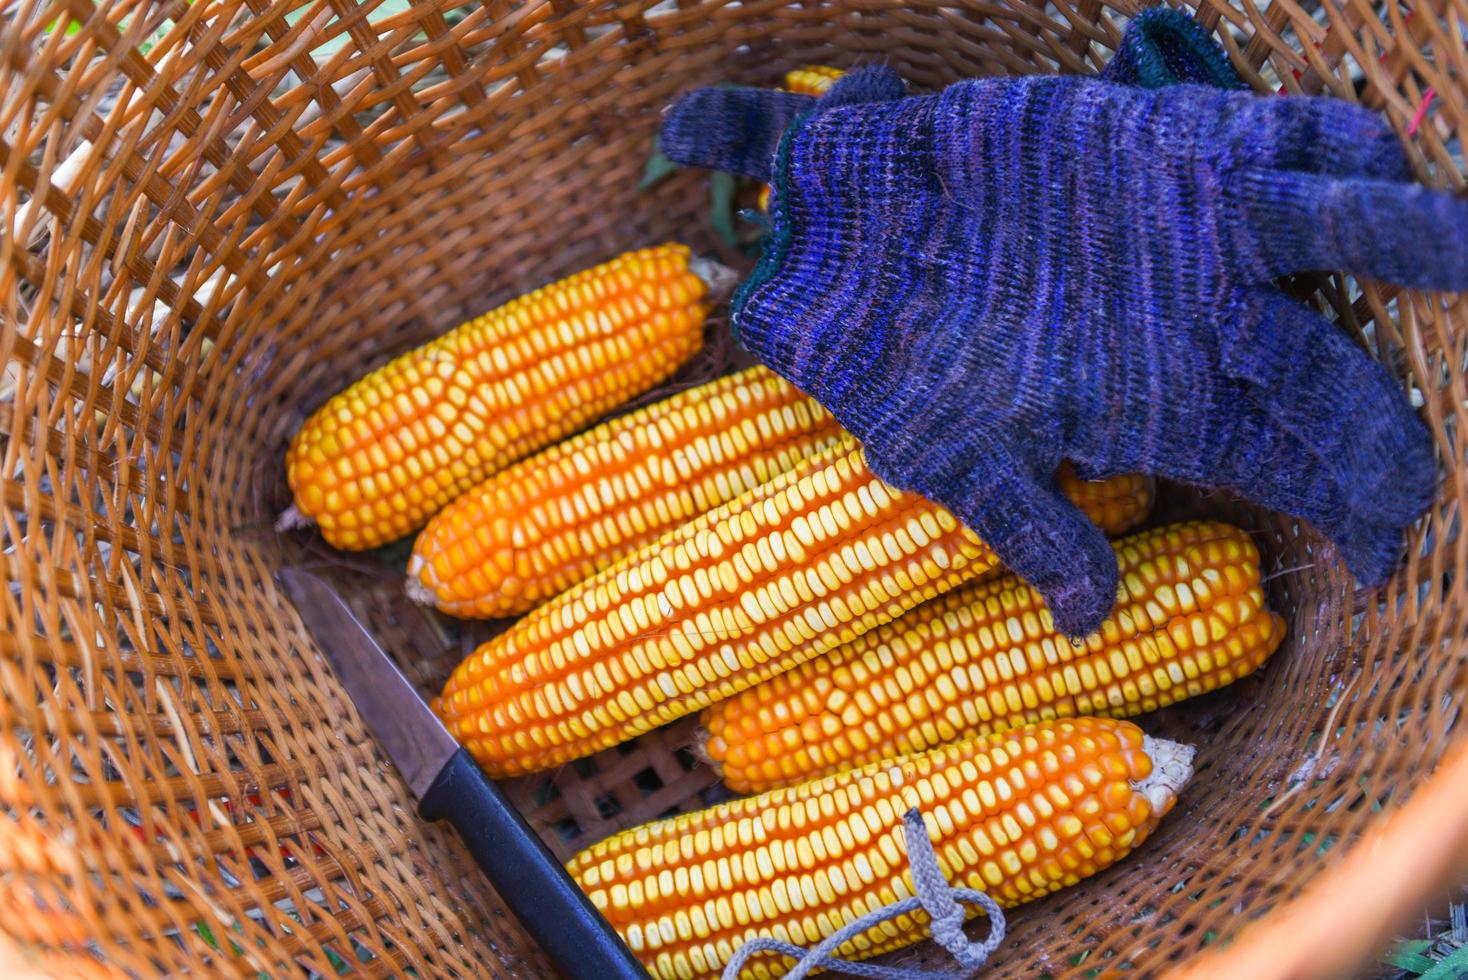 récolte de maïs mûr du champ dans le panier, récolte de maïs produits agricoles asiatiques. photo